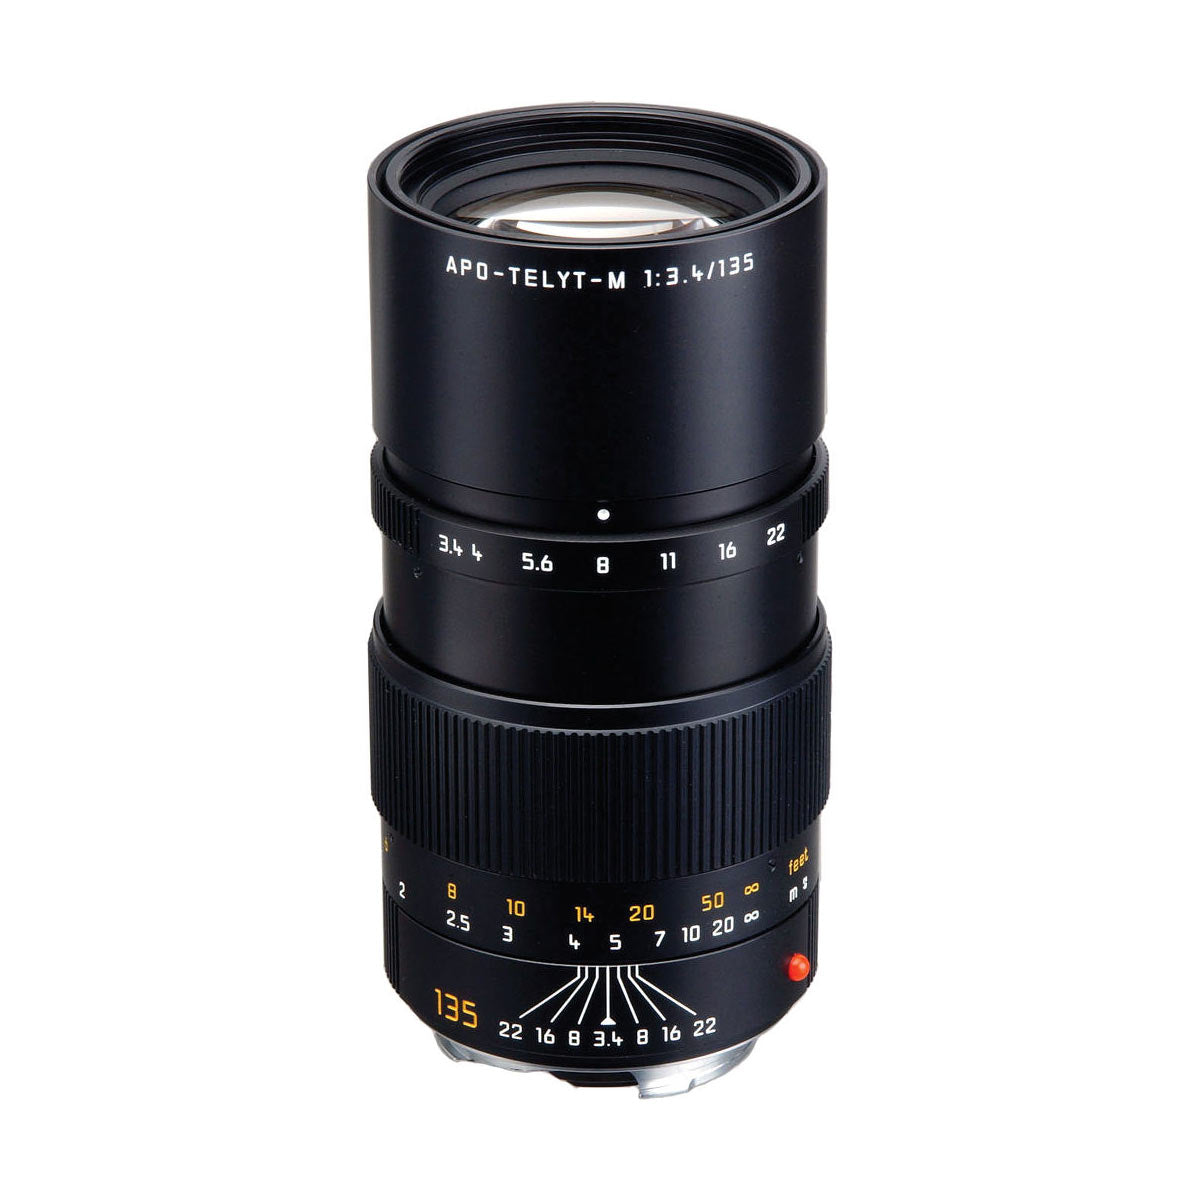 Leica 135mm f/3.4 APO-Telyt-M Lens (E49)